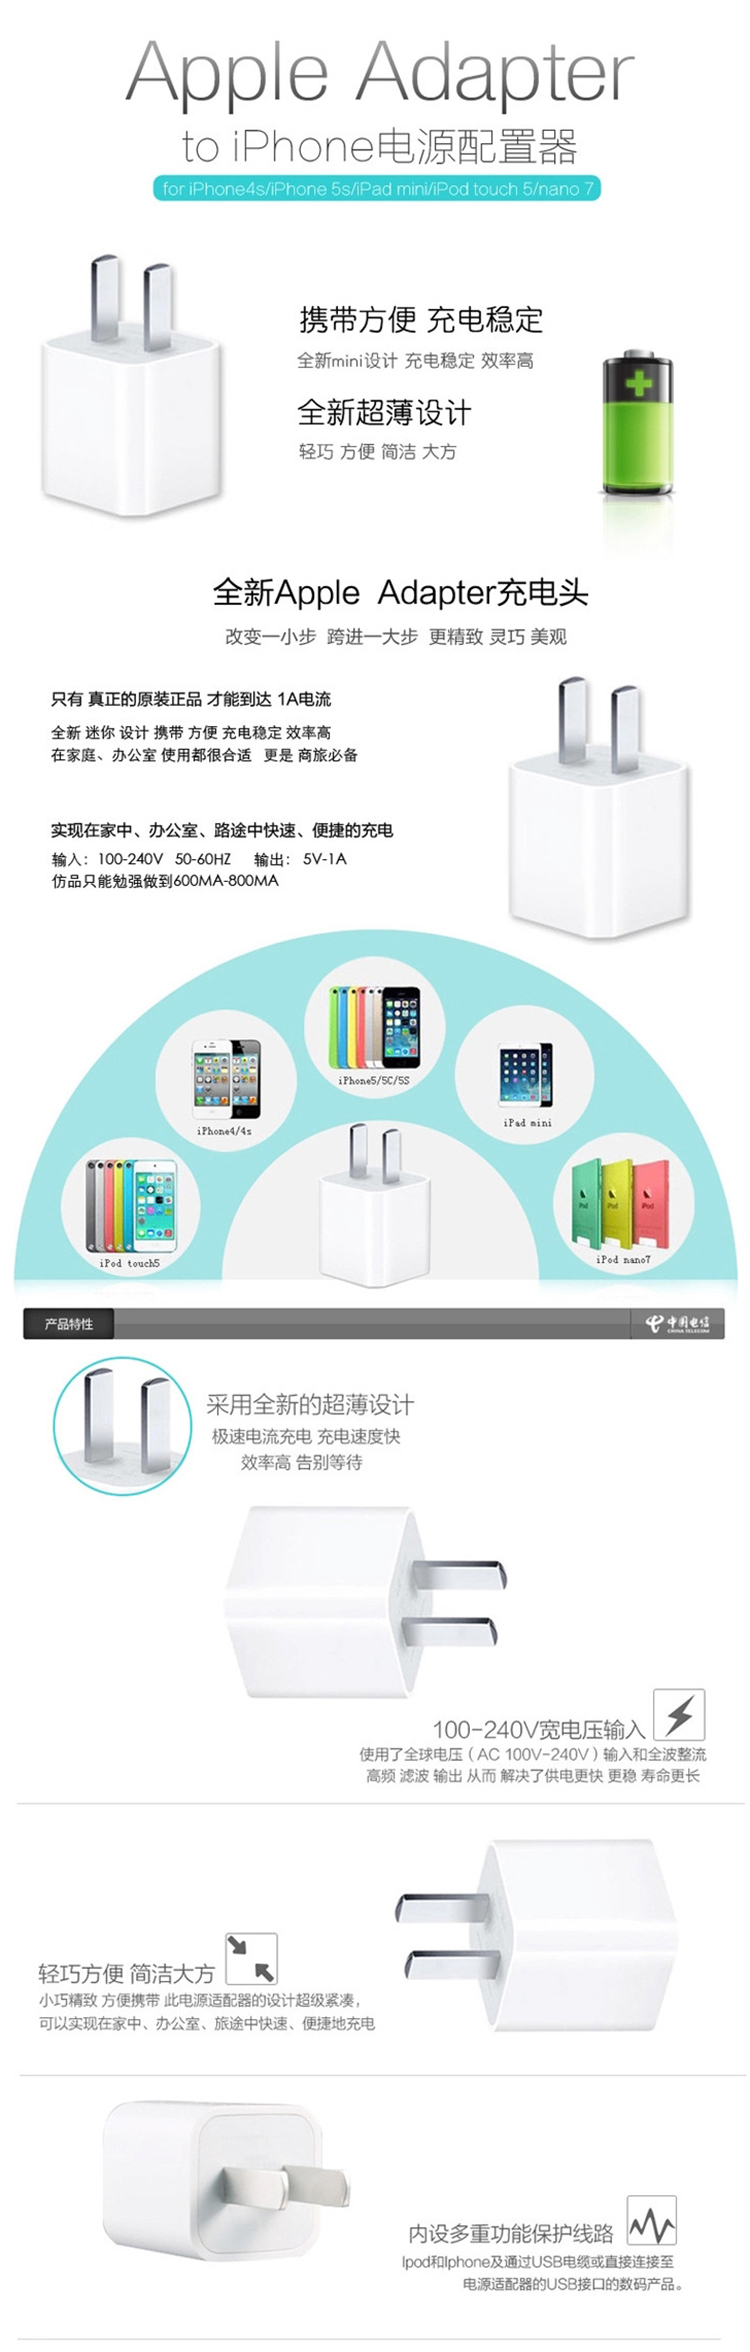 苹果原装充电器充电头电源适配器适用于iPhone6 /6Plus /5/5S /5C